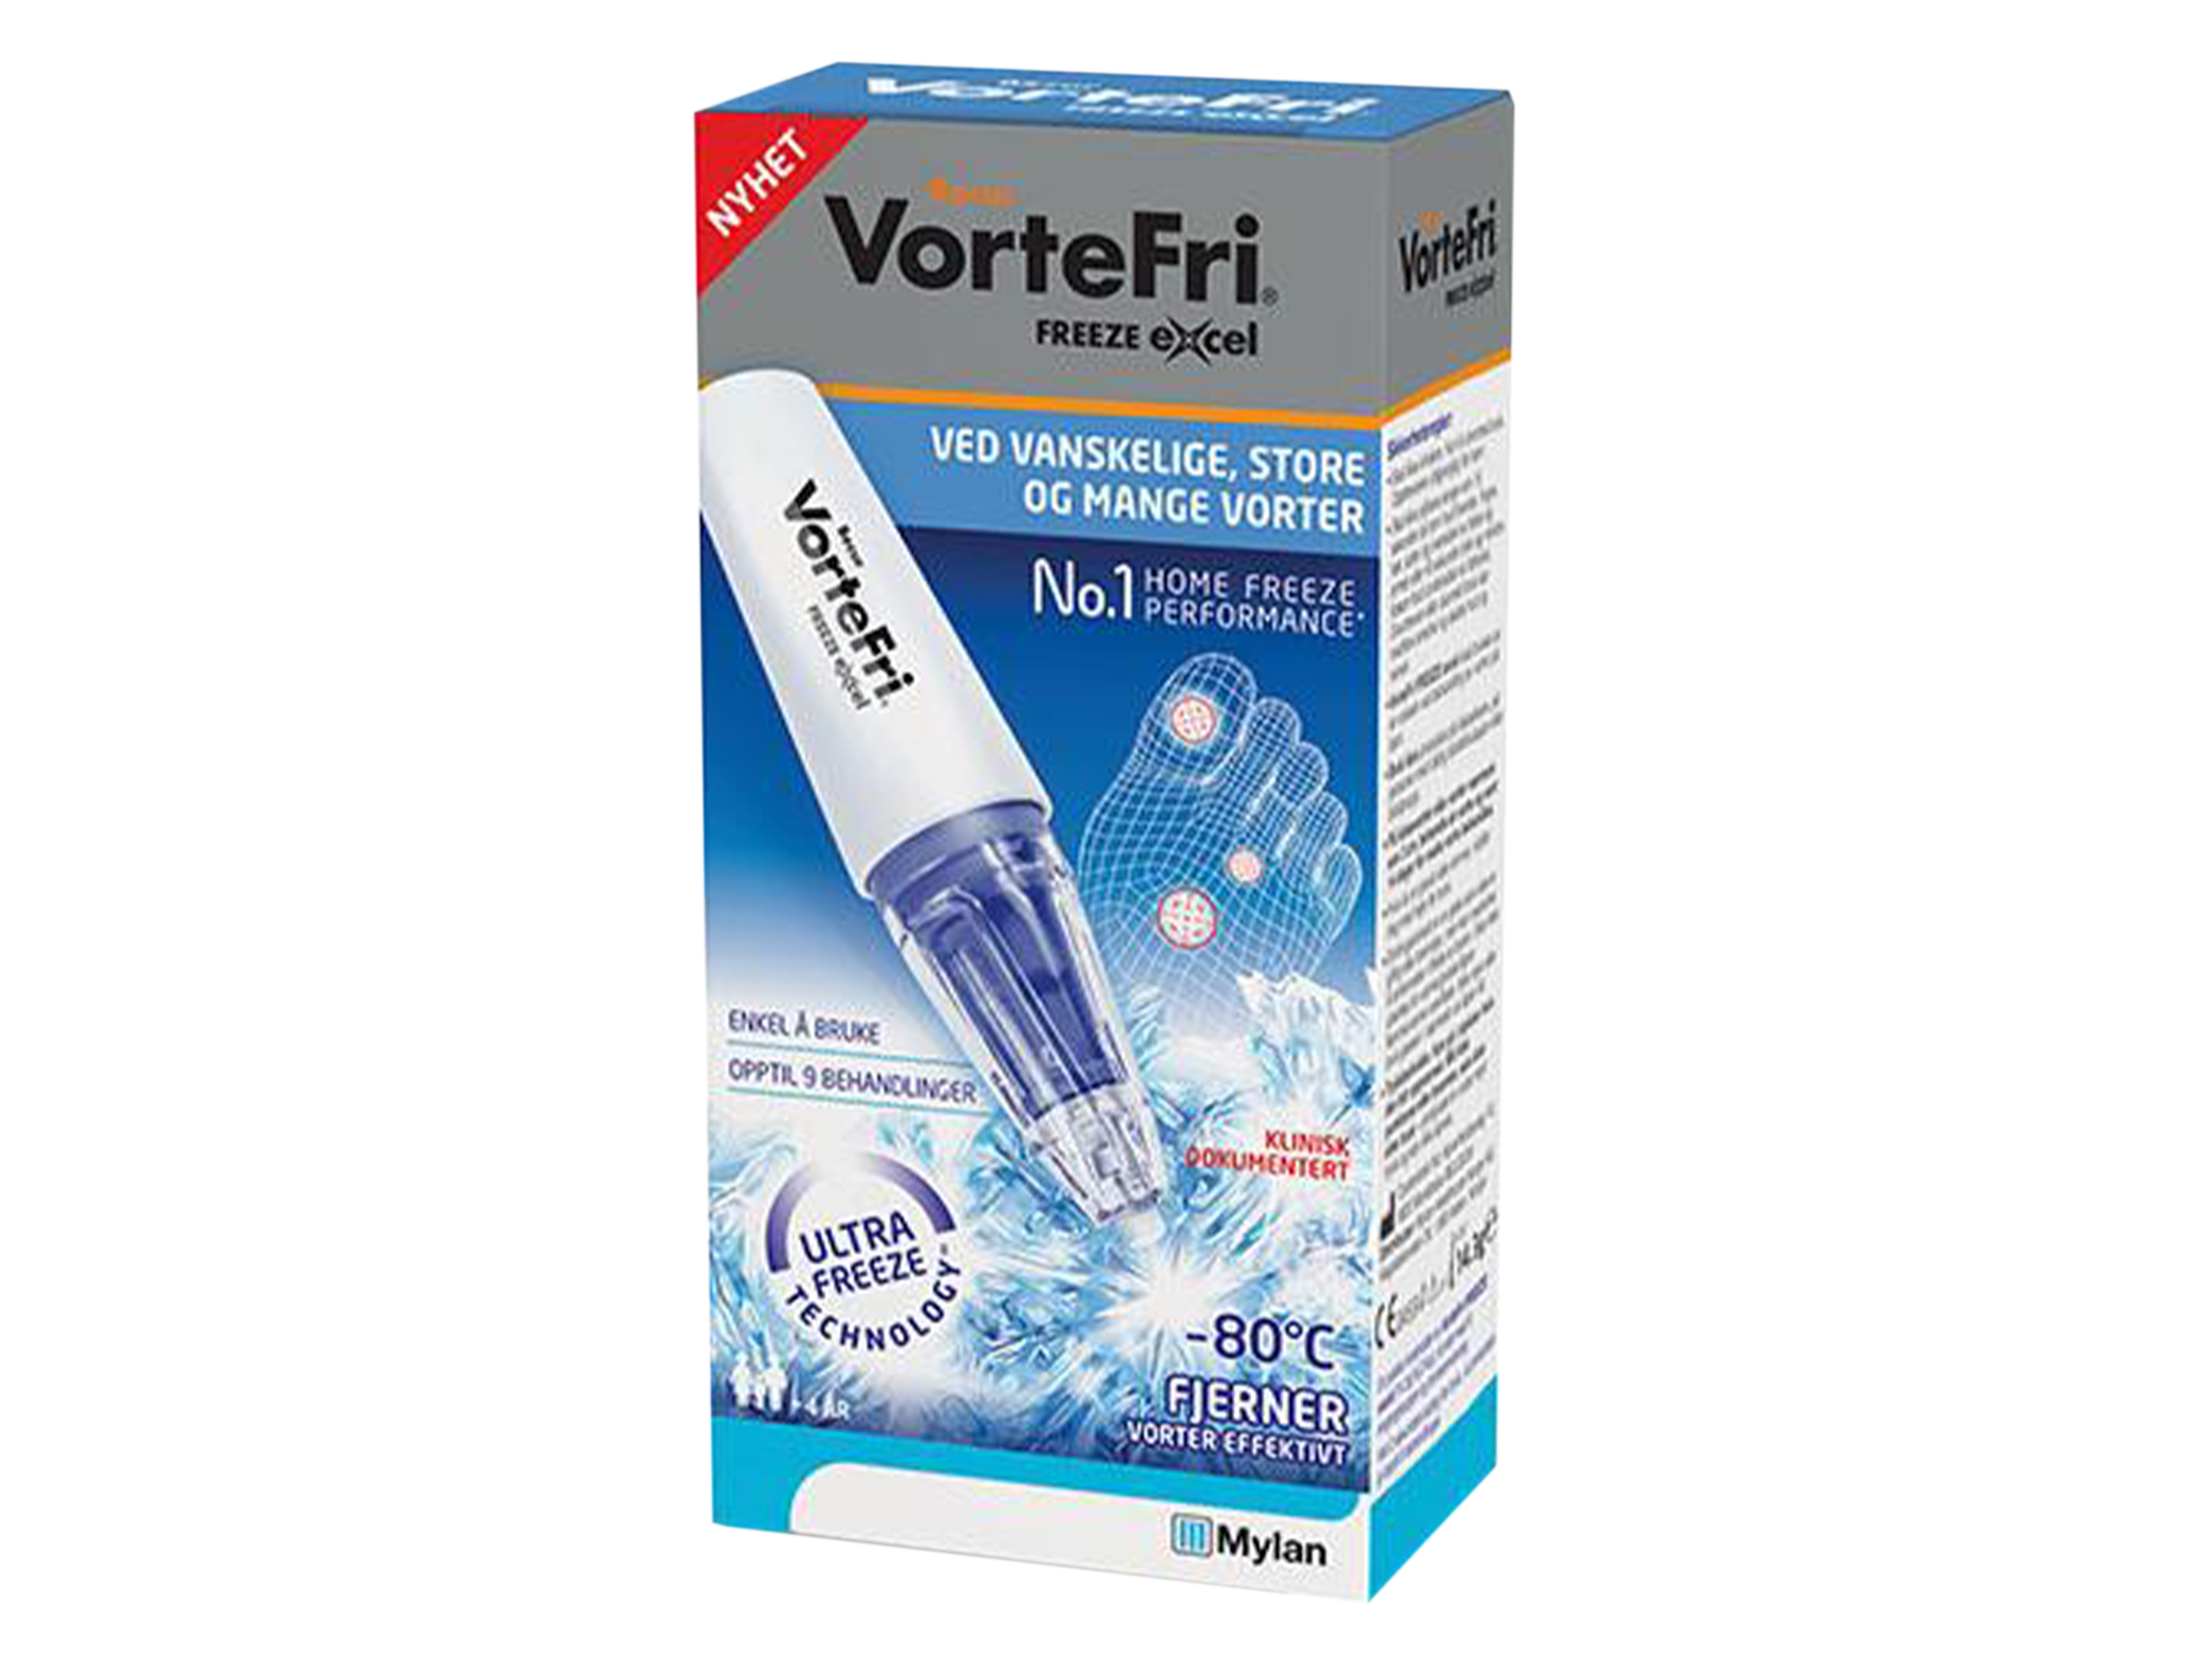 VorteFri Freeze Excel Vortefjerner, 14,3 gram